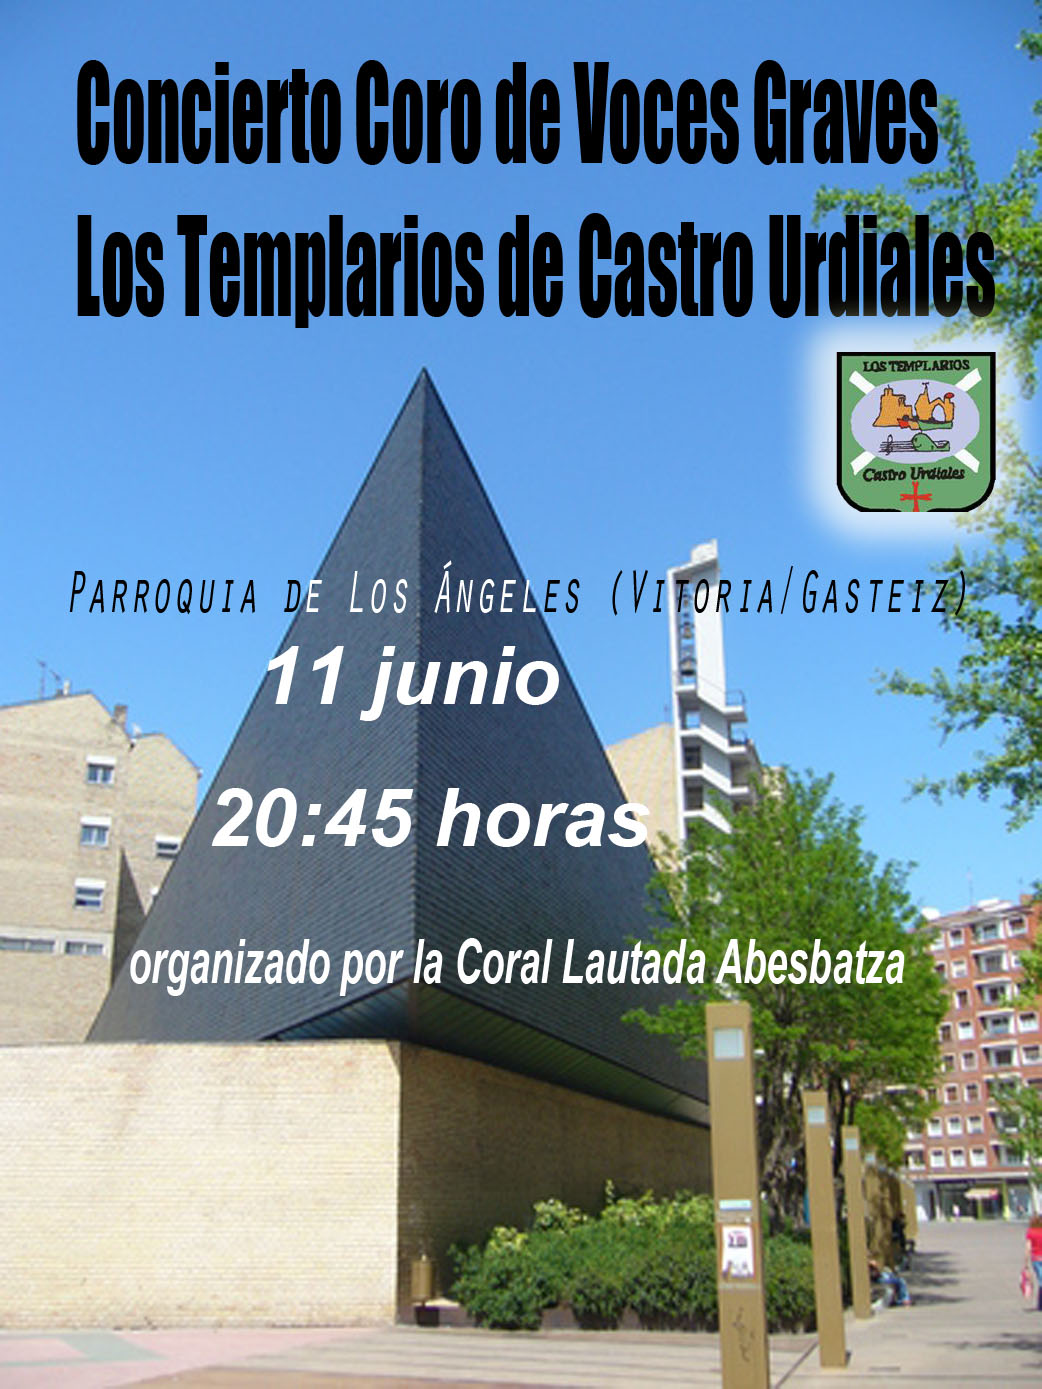 Concierto Coro de Voces Graves Los Templarios de Castro Urdiales, organizado por la Coral Lautada Abesbatza